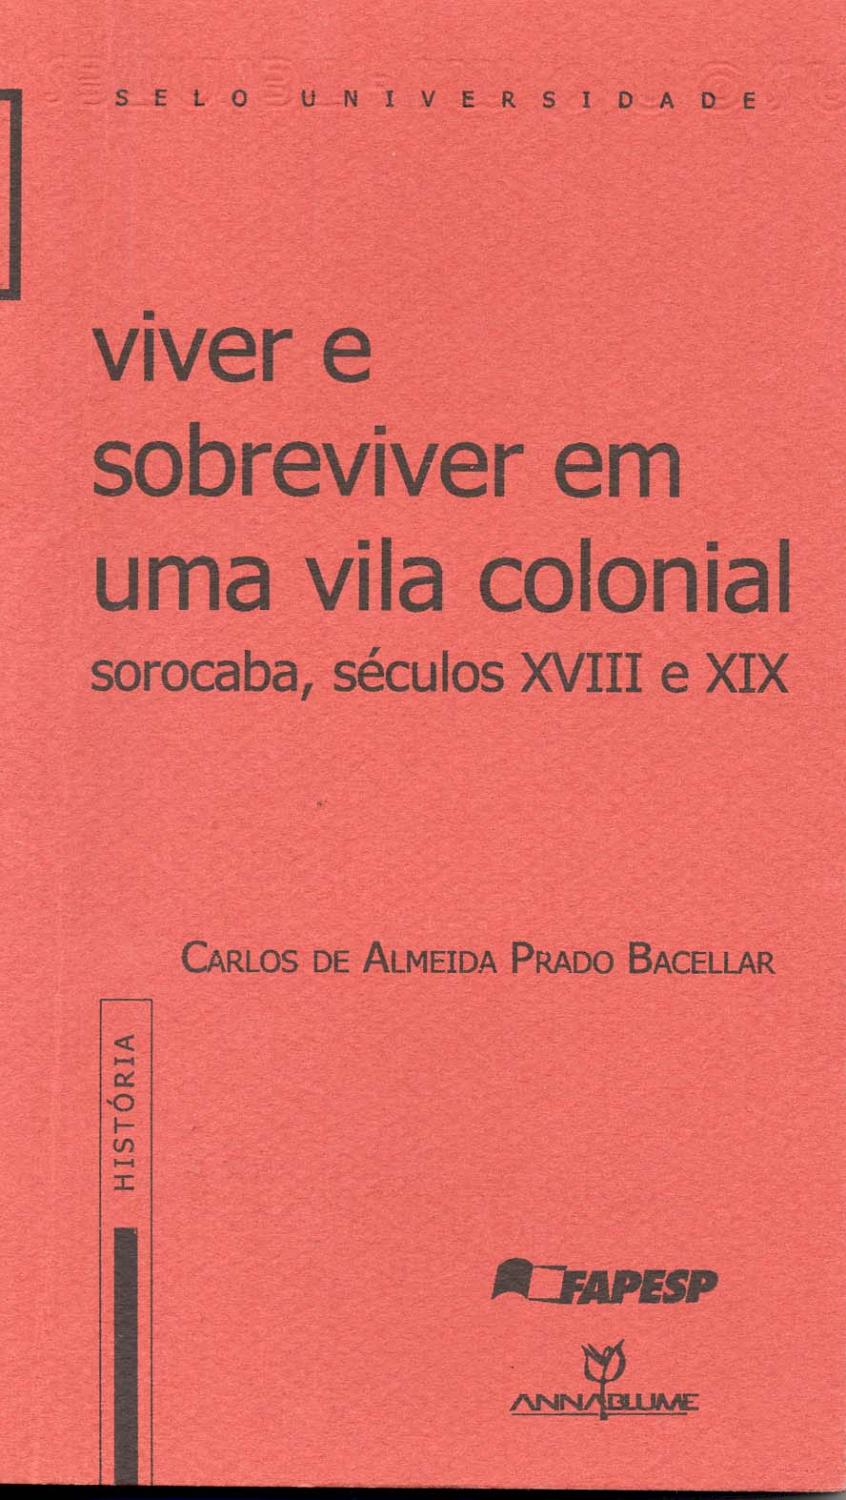 Viver e sobreviver em uma vila colonial : Sorocaba, séculos XVIII e XIX. -- ( Selo universidade ; 152 ) - Bacellar, Carlos de Almeida Prado